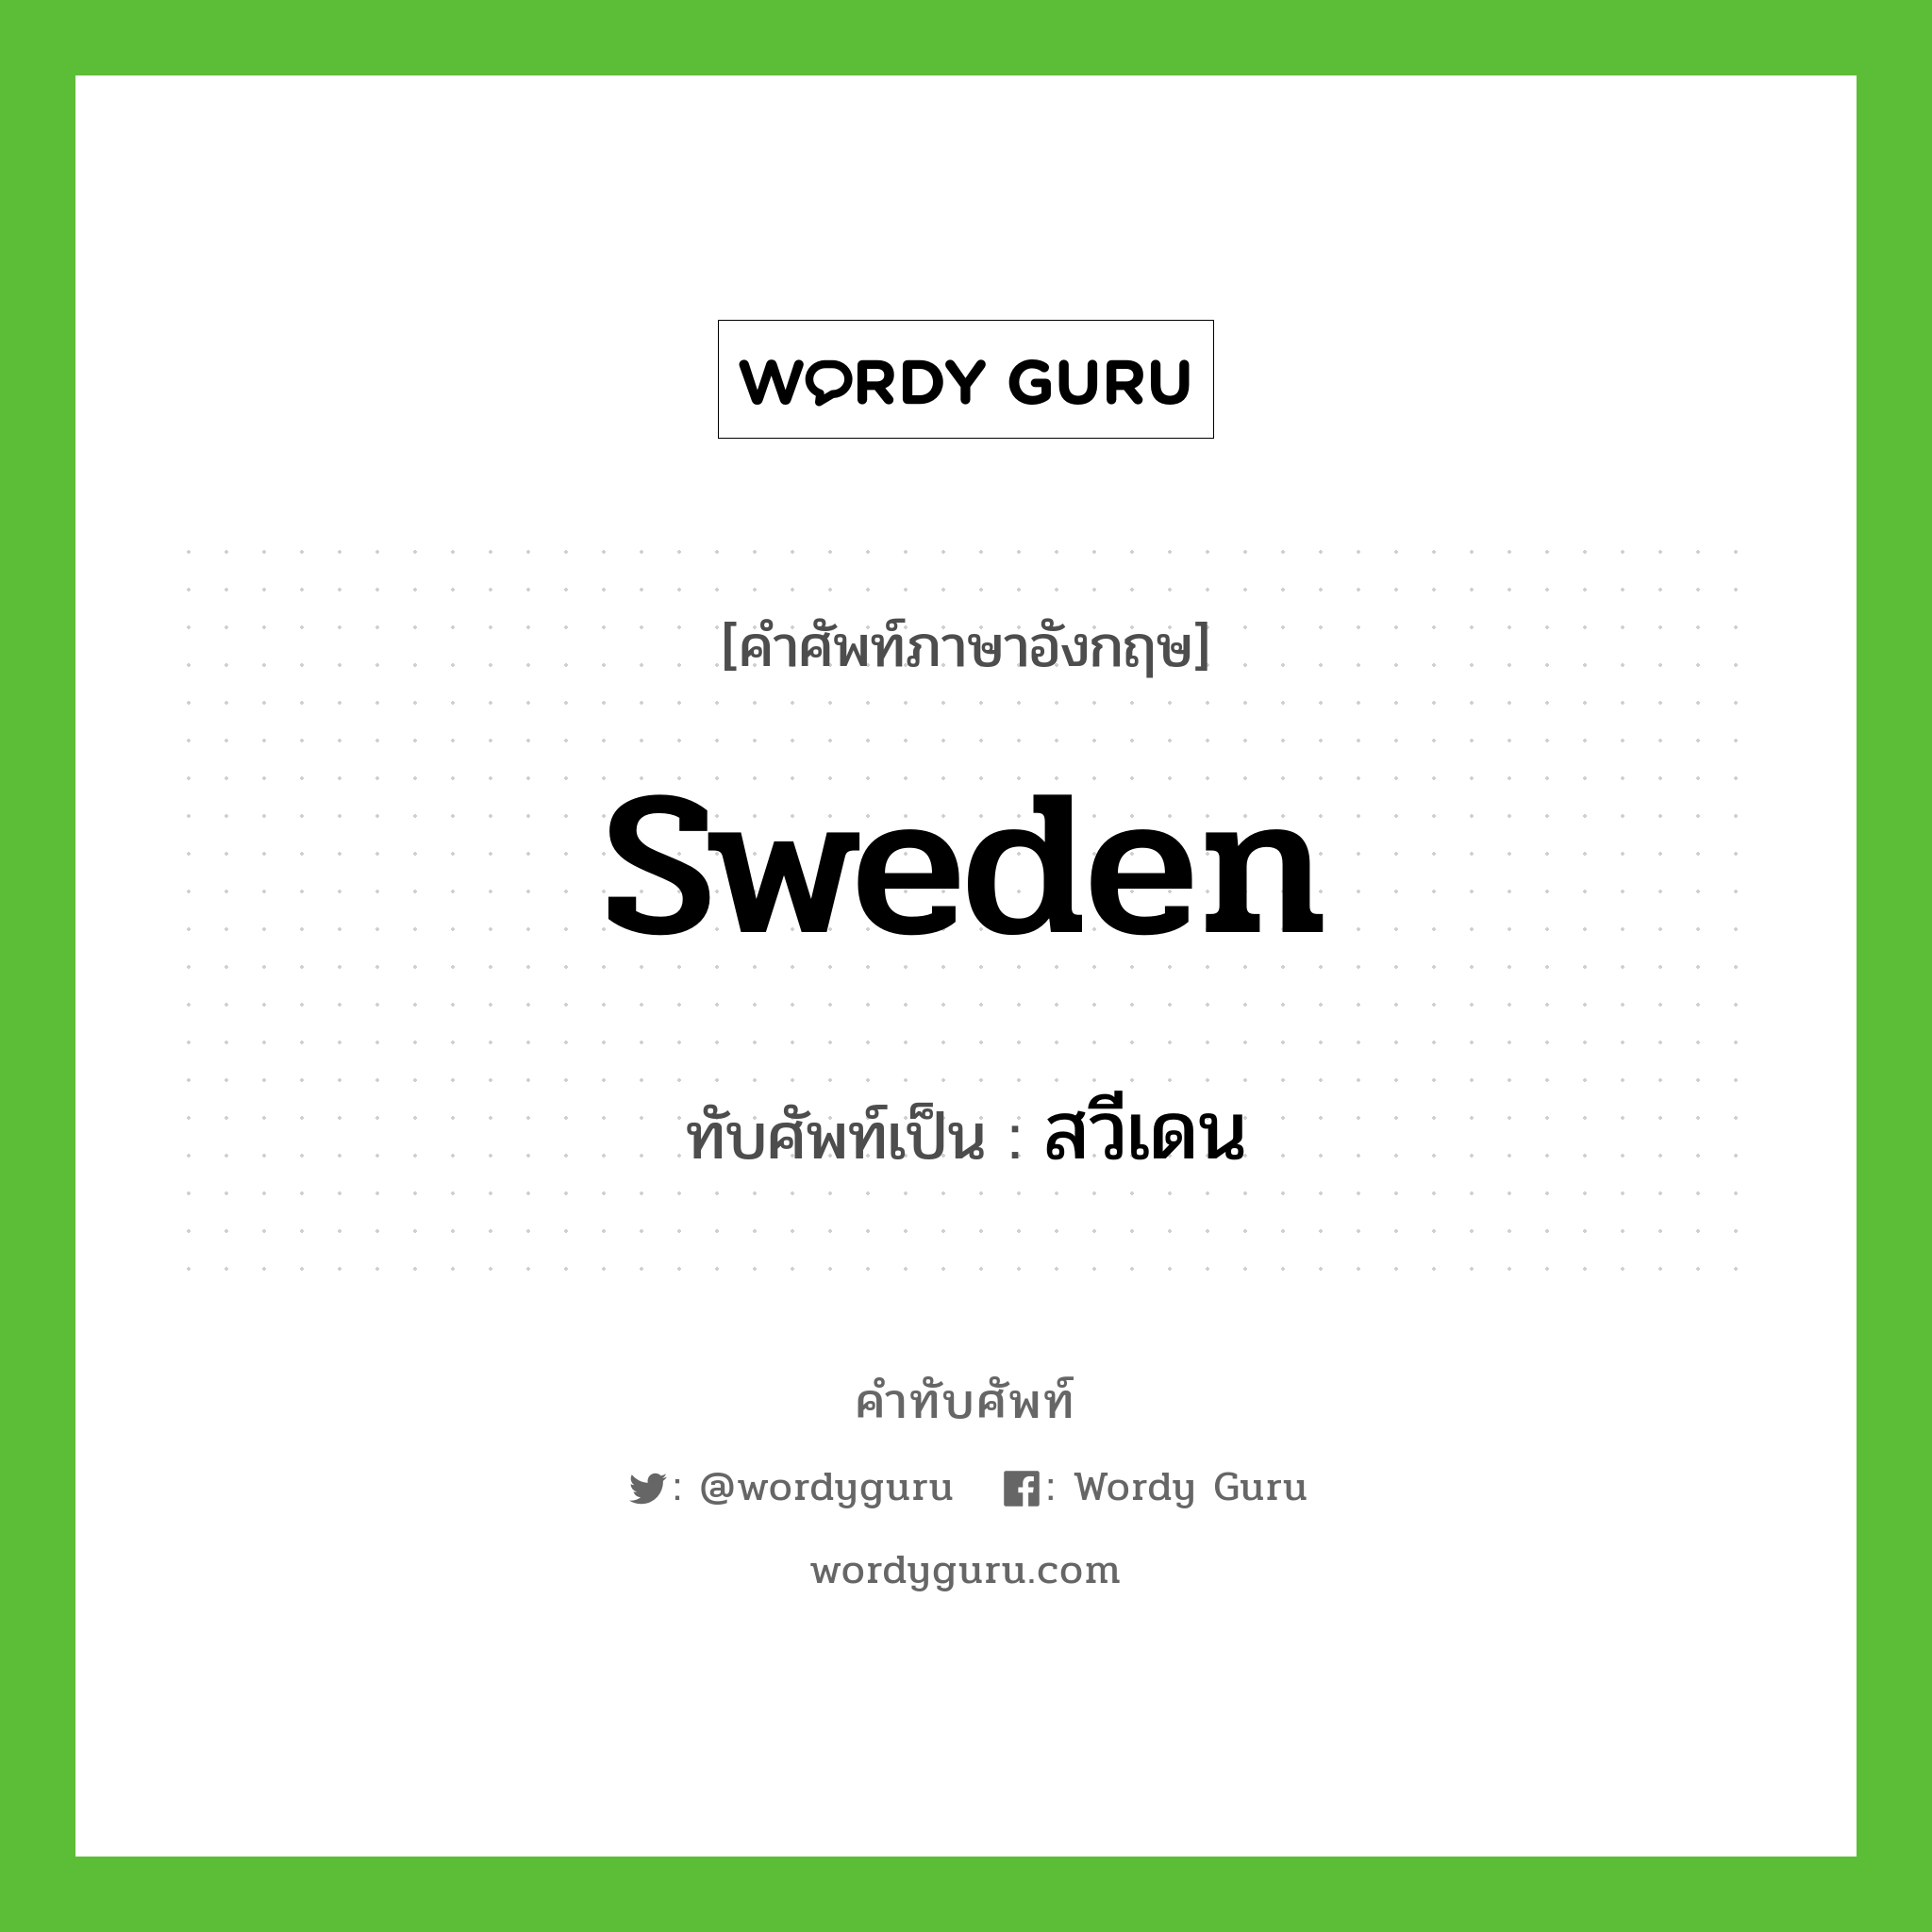 Sweden เขียนเป็นคำไทยว่าอะไร?, คำศัพท์ภาษาอังกฤษ Sweden ทับศัพท์เป็น สวีเดน